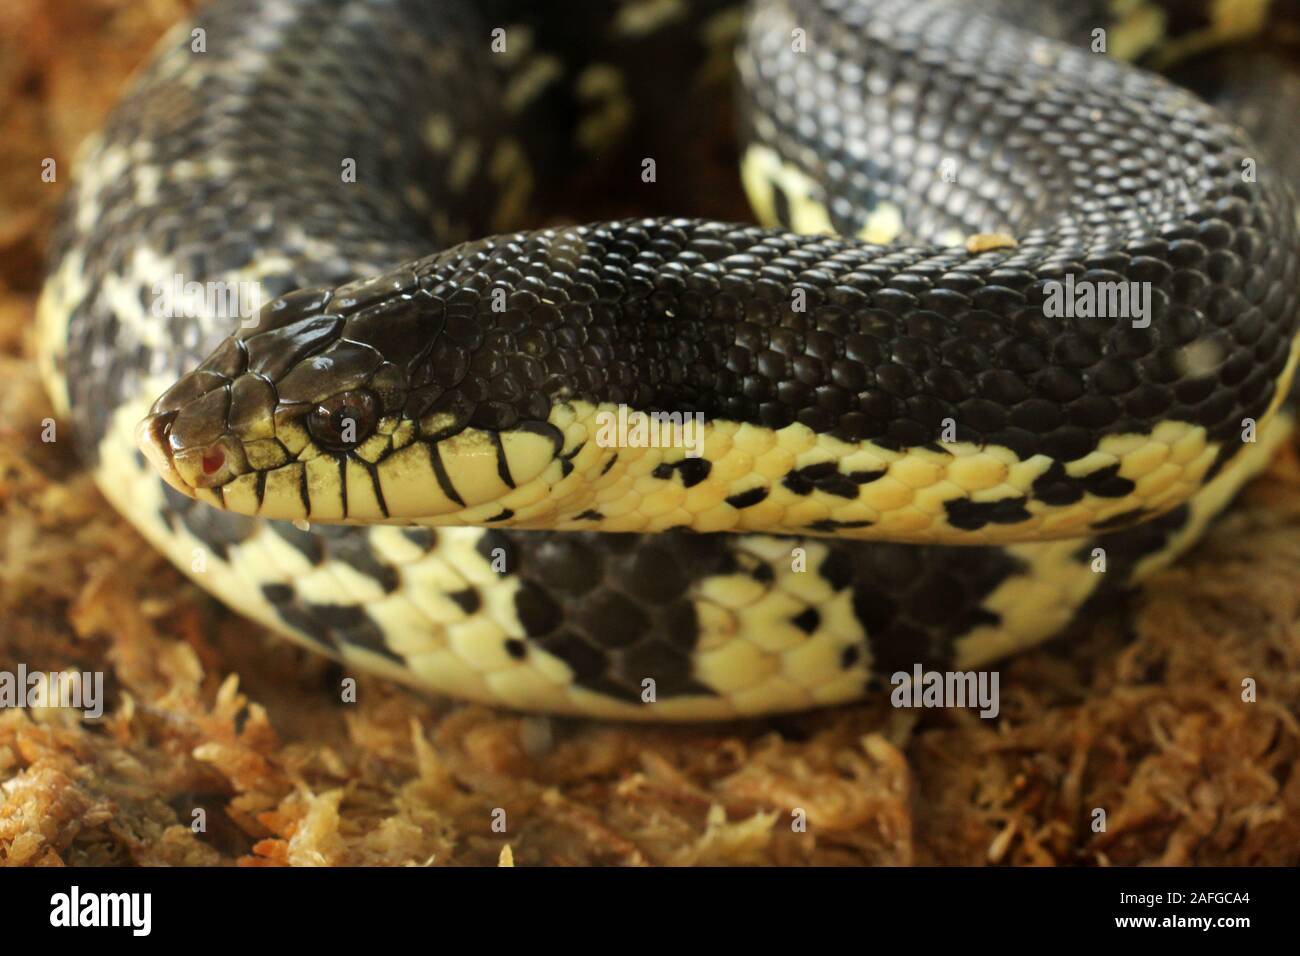 Xenopeltis unicolor est une espèce de serpent venimeux sunbeam trouvés en Asie du sud-est. C'est un serpent primitif est iridescente. Banque D'Images